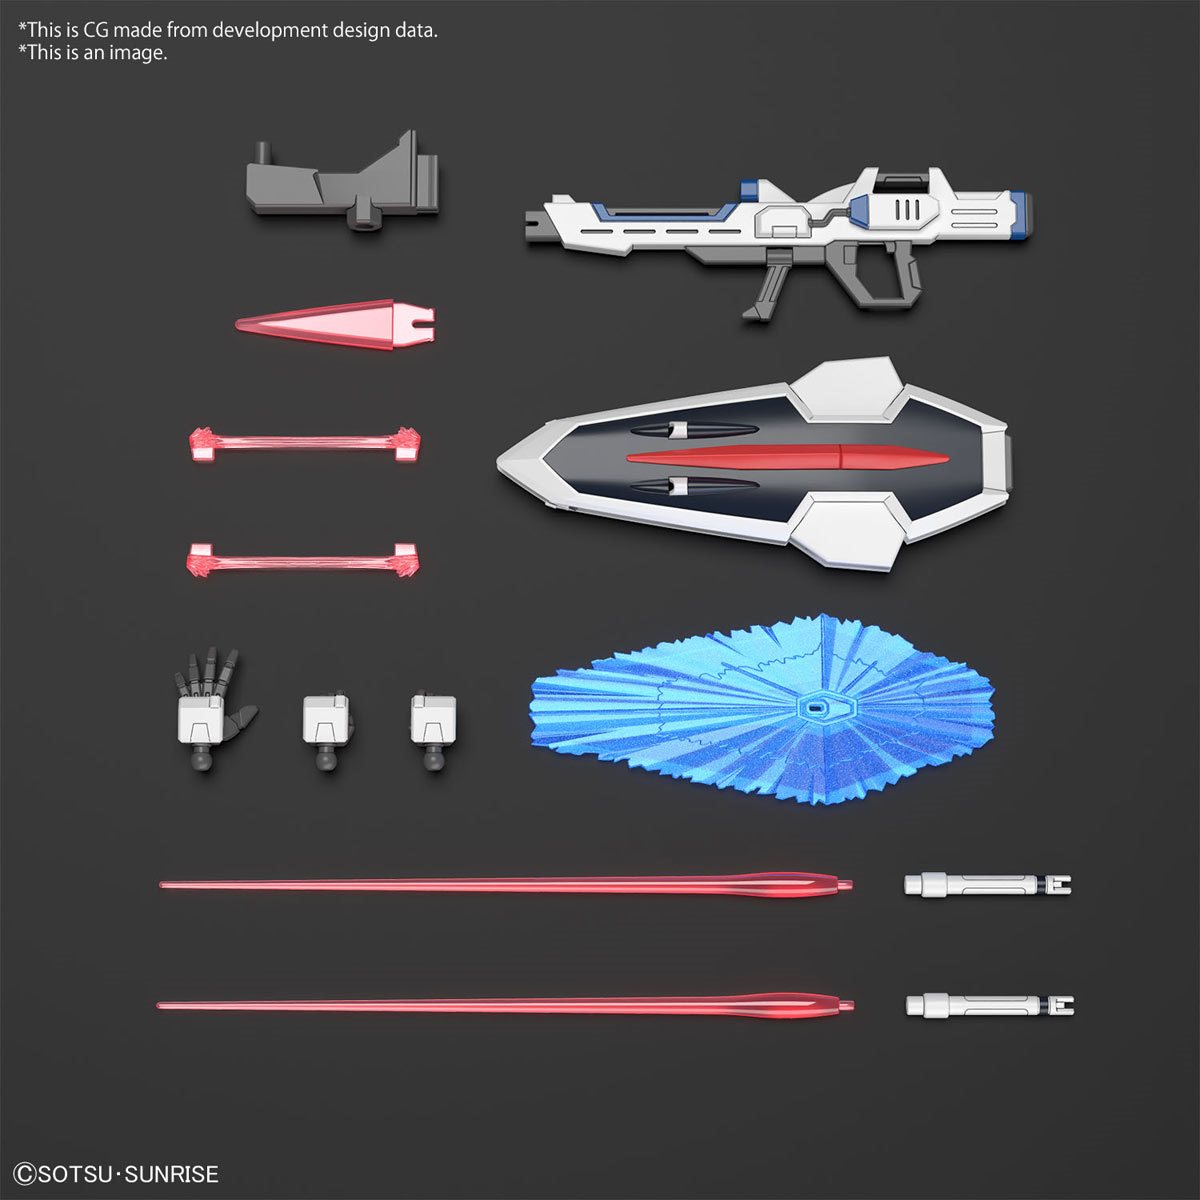 Mobile Fighter G Gundam HG Rising Gundam 1/100 Scale Model Kit